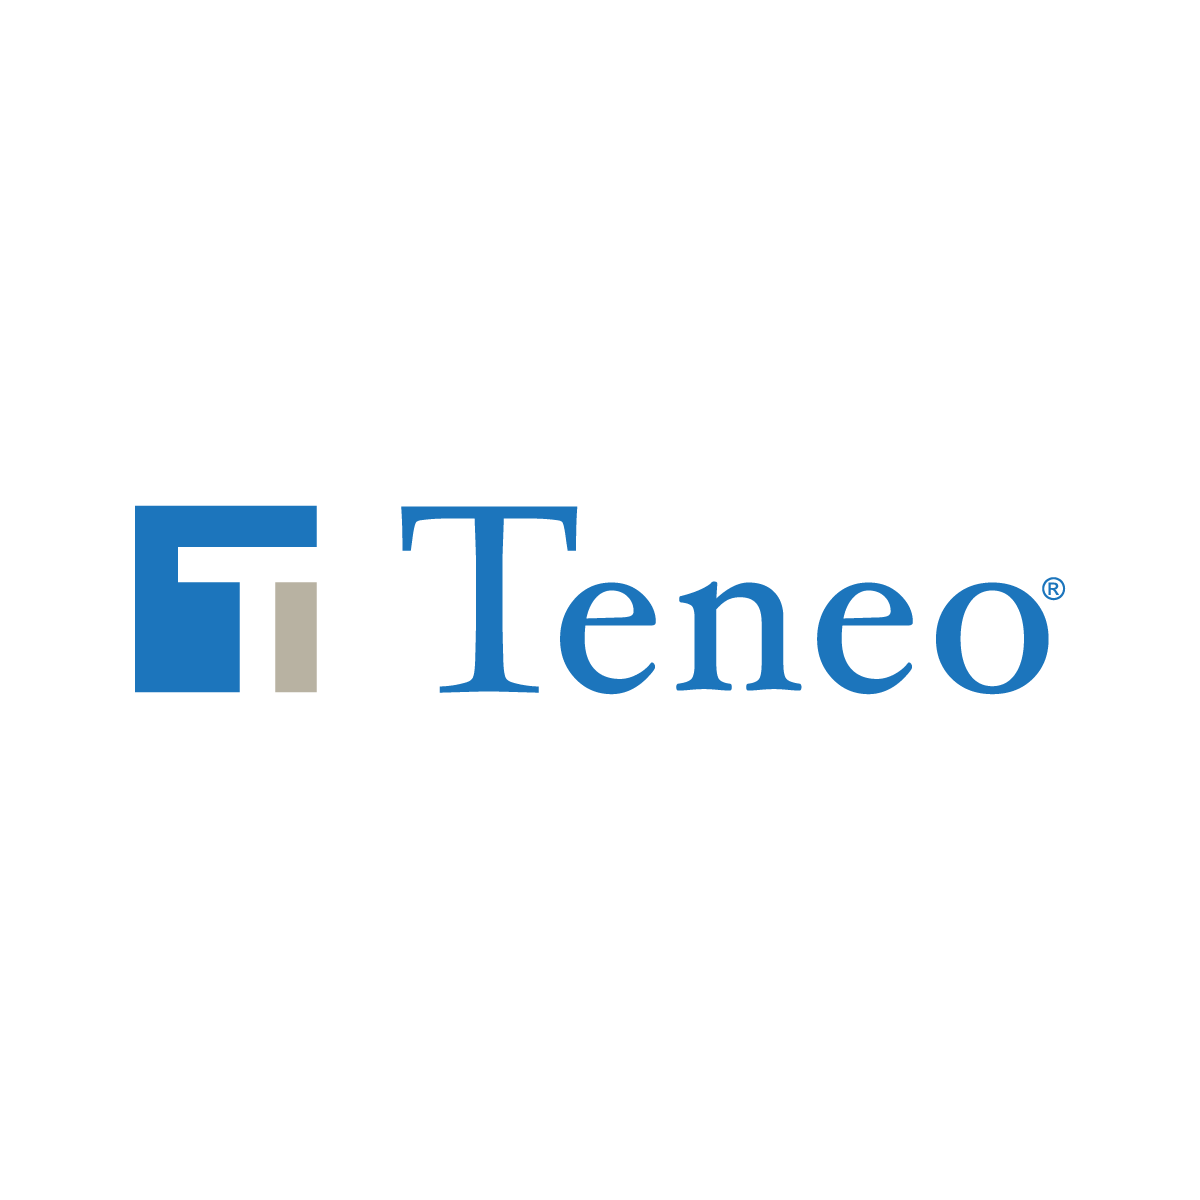 teneo-og-placeholder.png